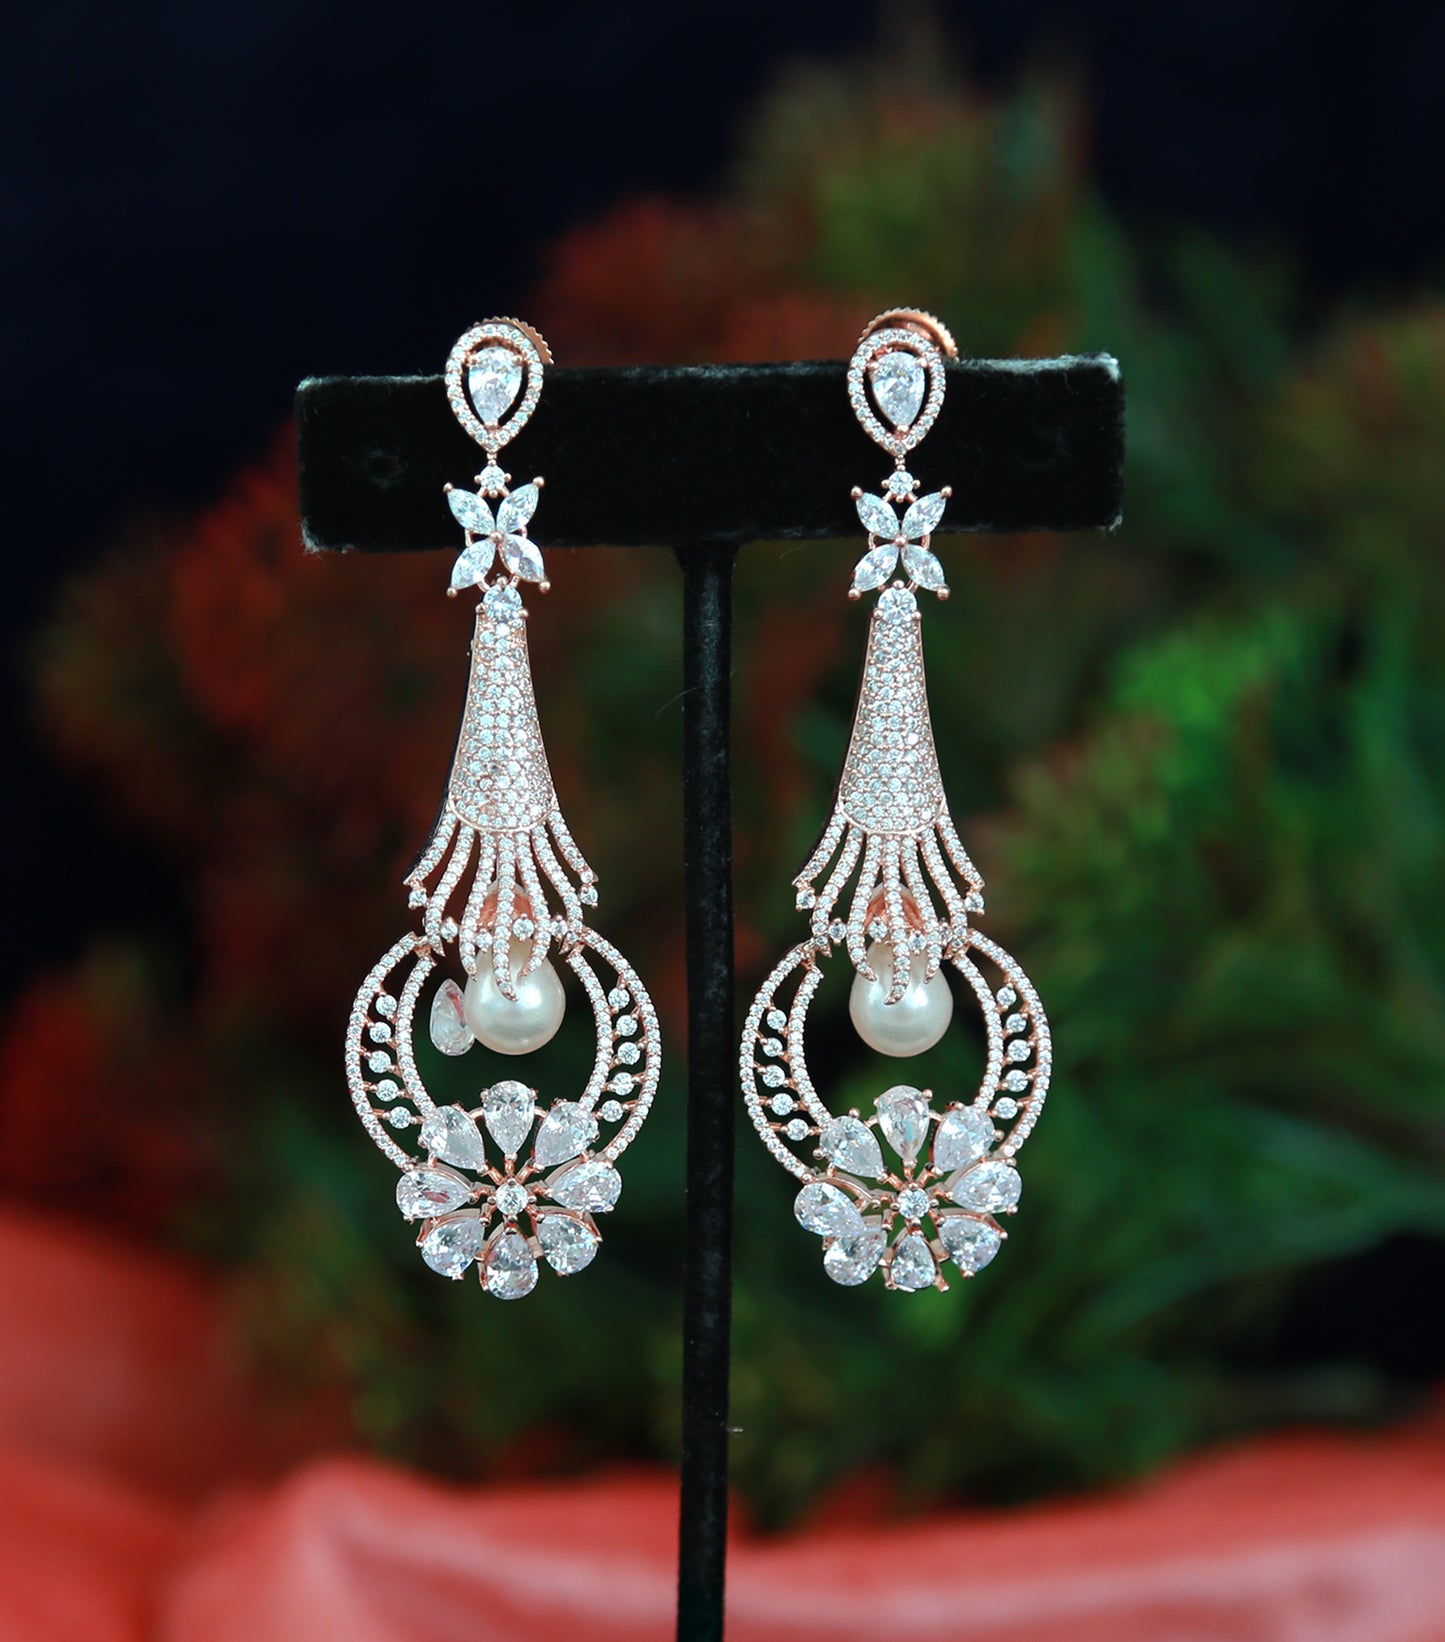 Rose Gold American Diamond Dangle and Drop Earrings | Long CZ Ad Blue stone Chandelier Earrings